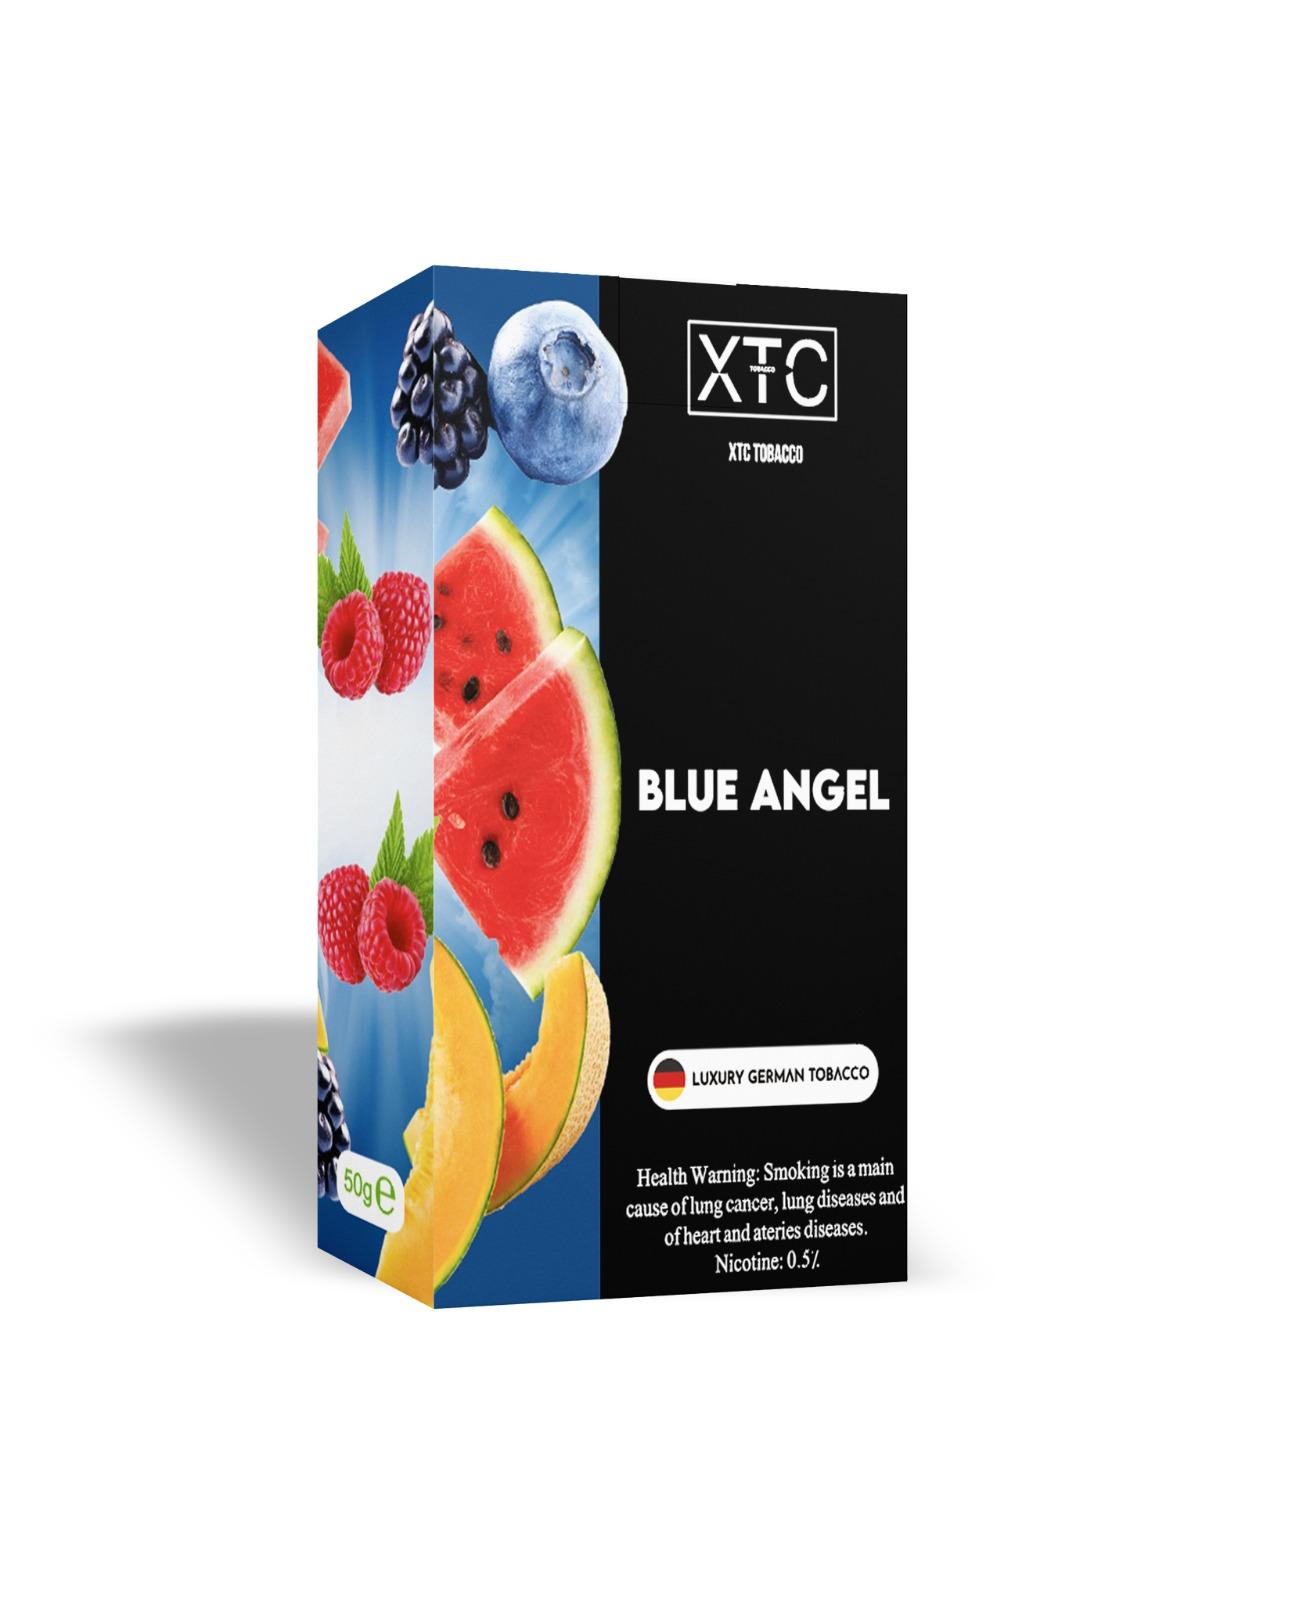 صورة لمنتج XTC Tobacco الملاك الأزرق